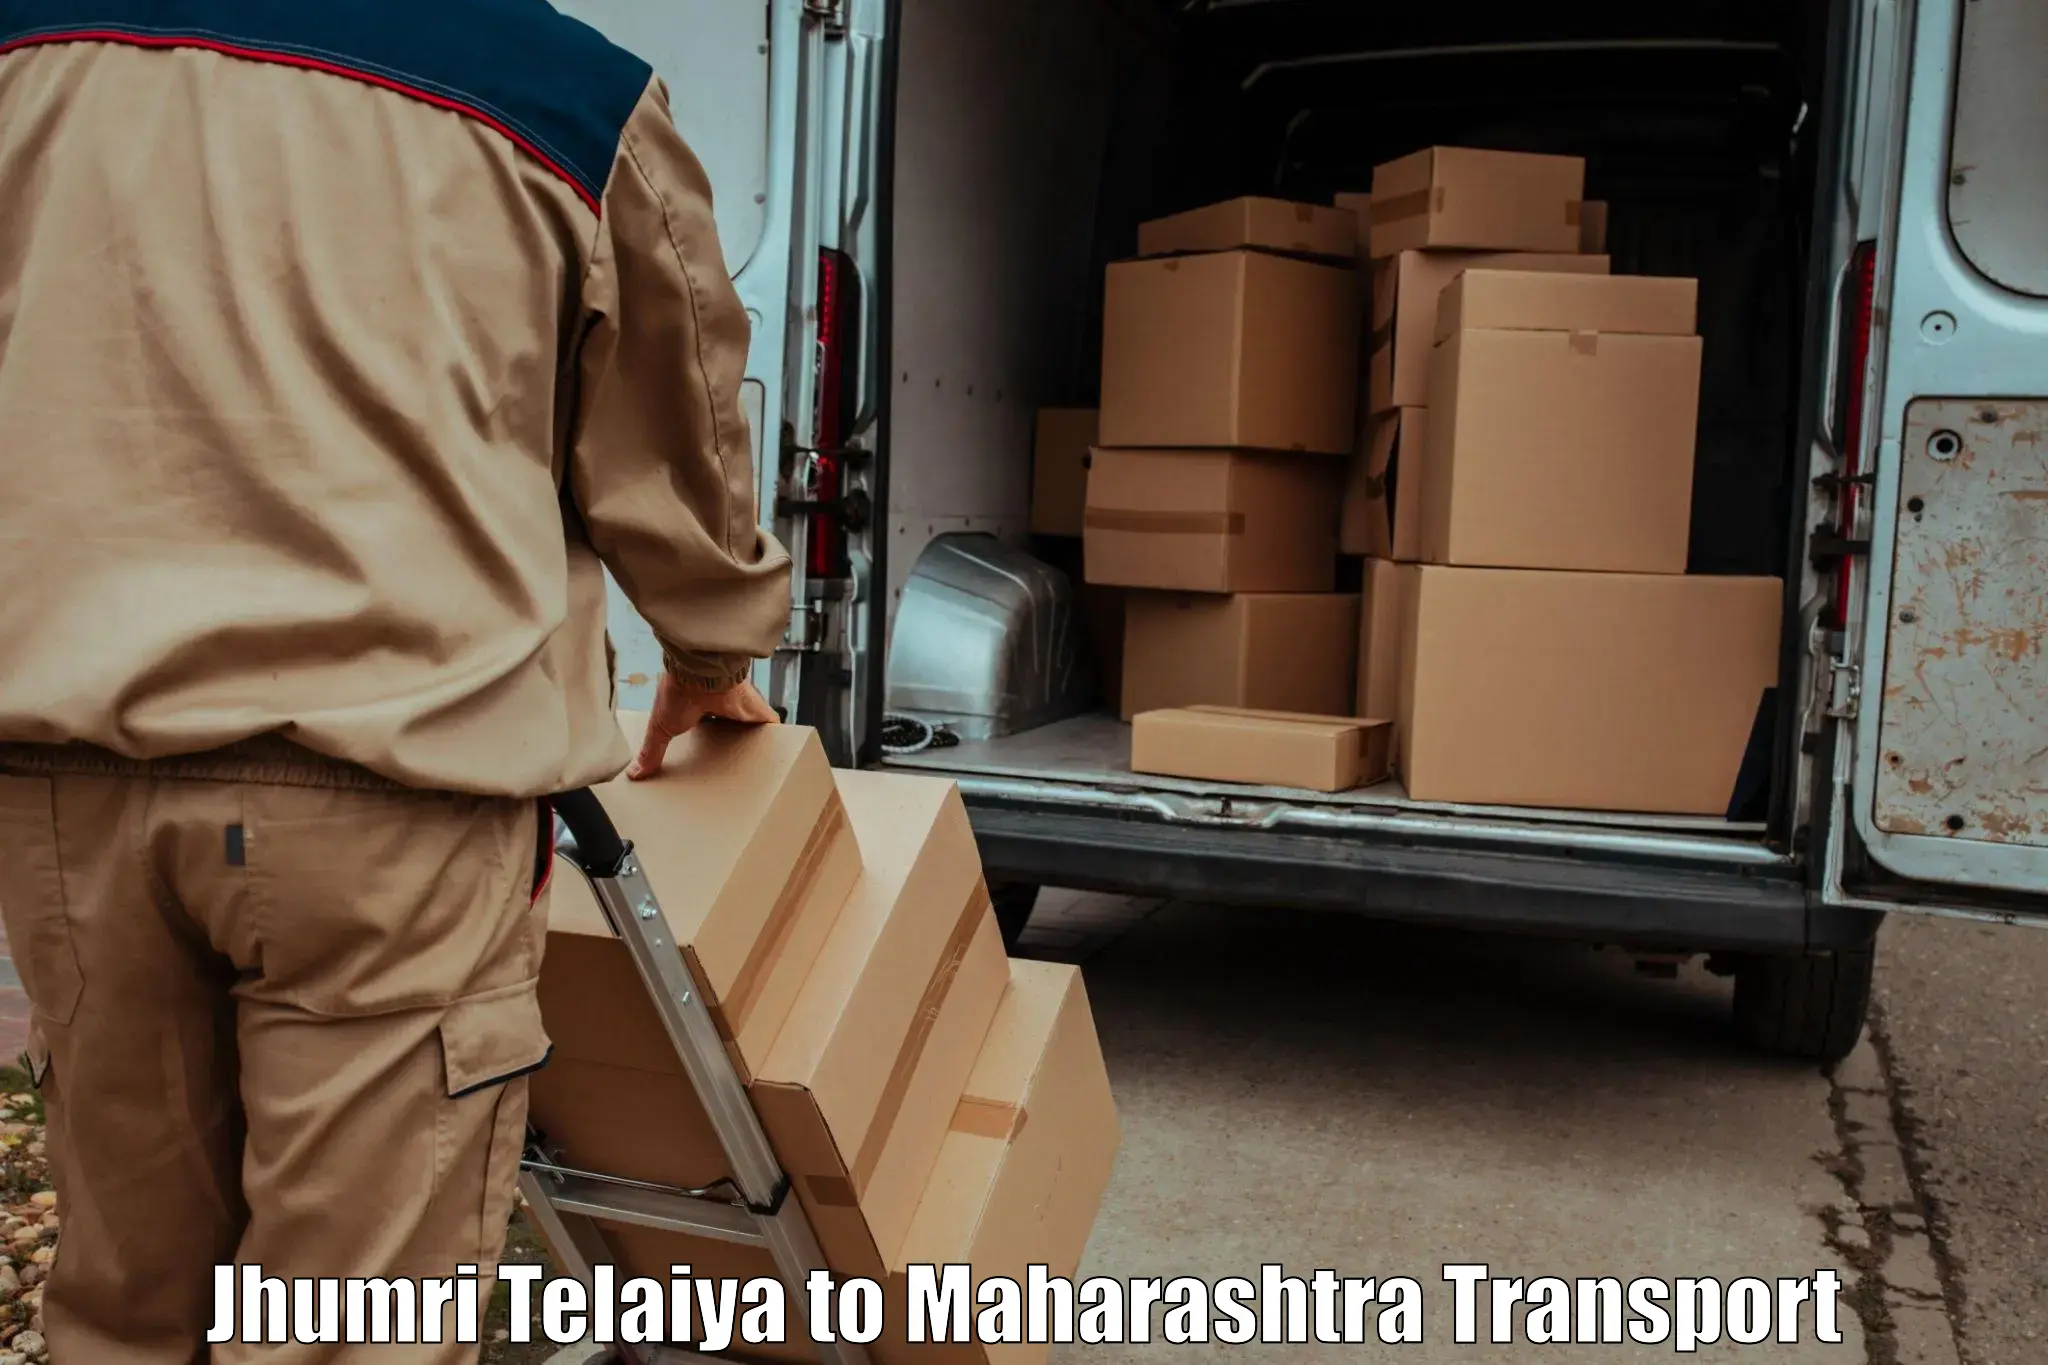 Vehicle transport services Jhumri Telaiya to Gadhinglaj